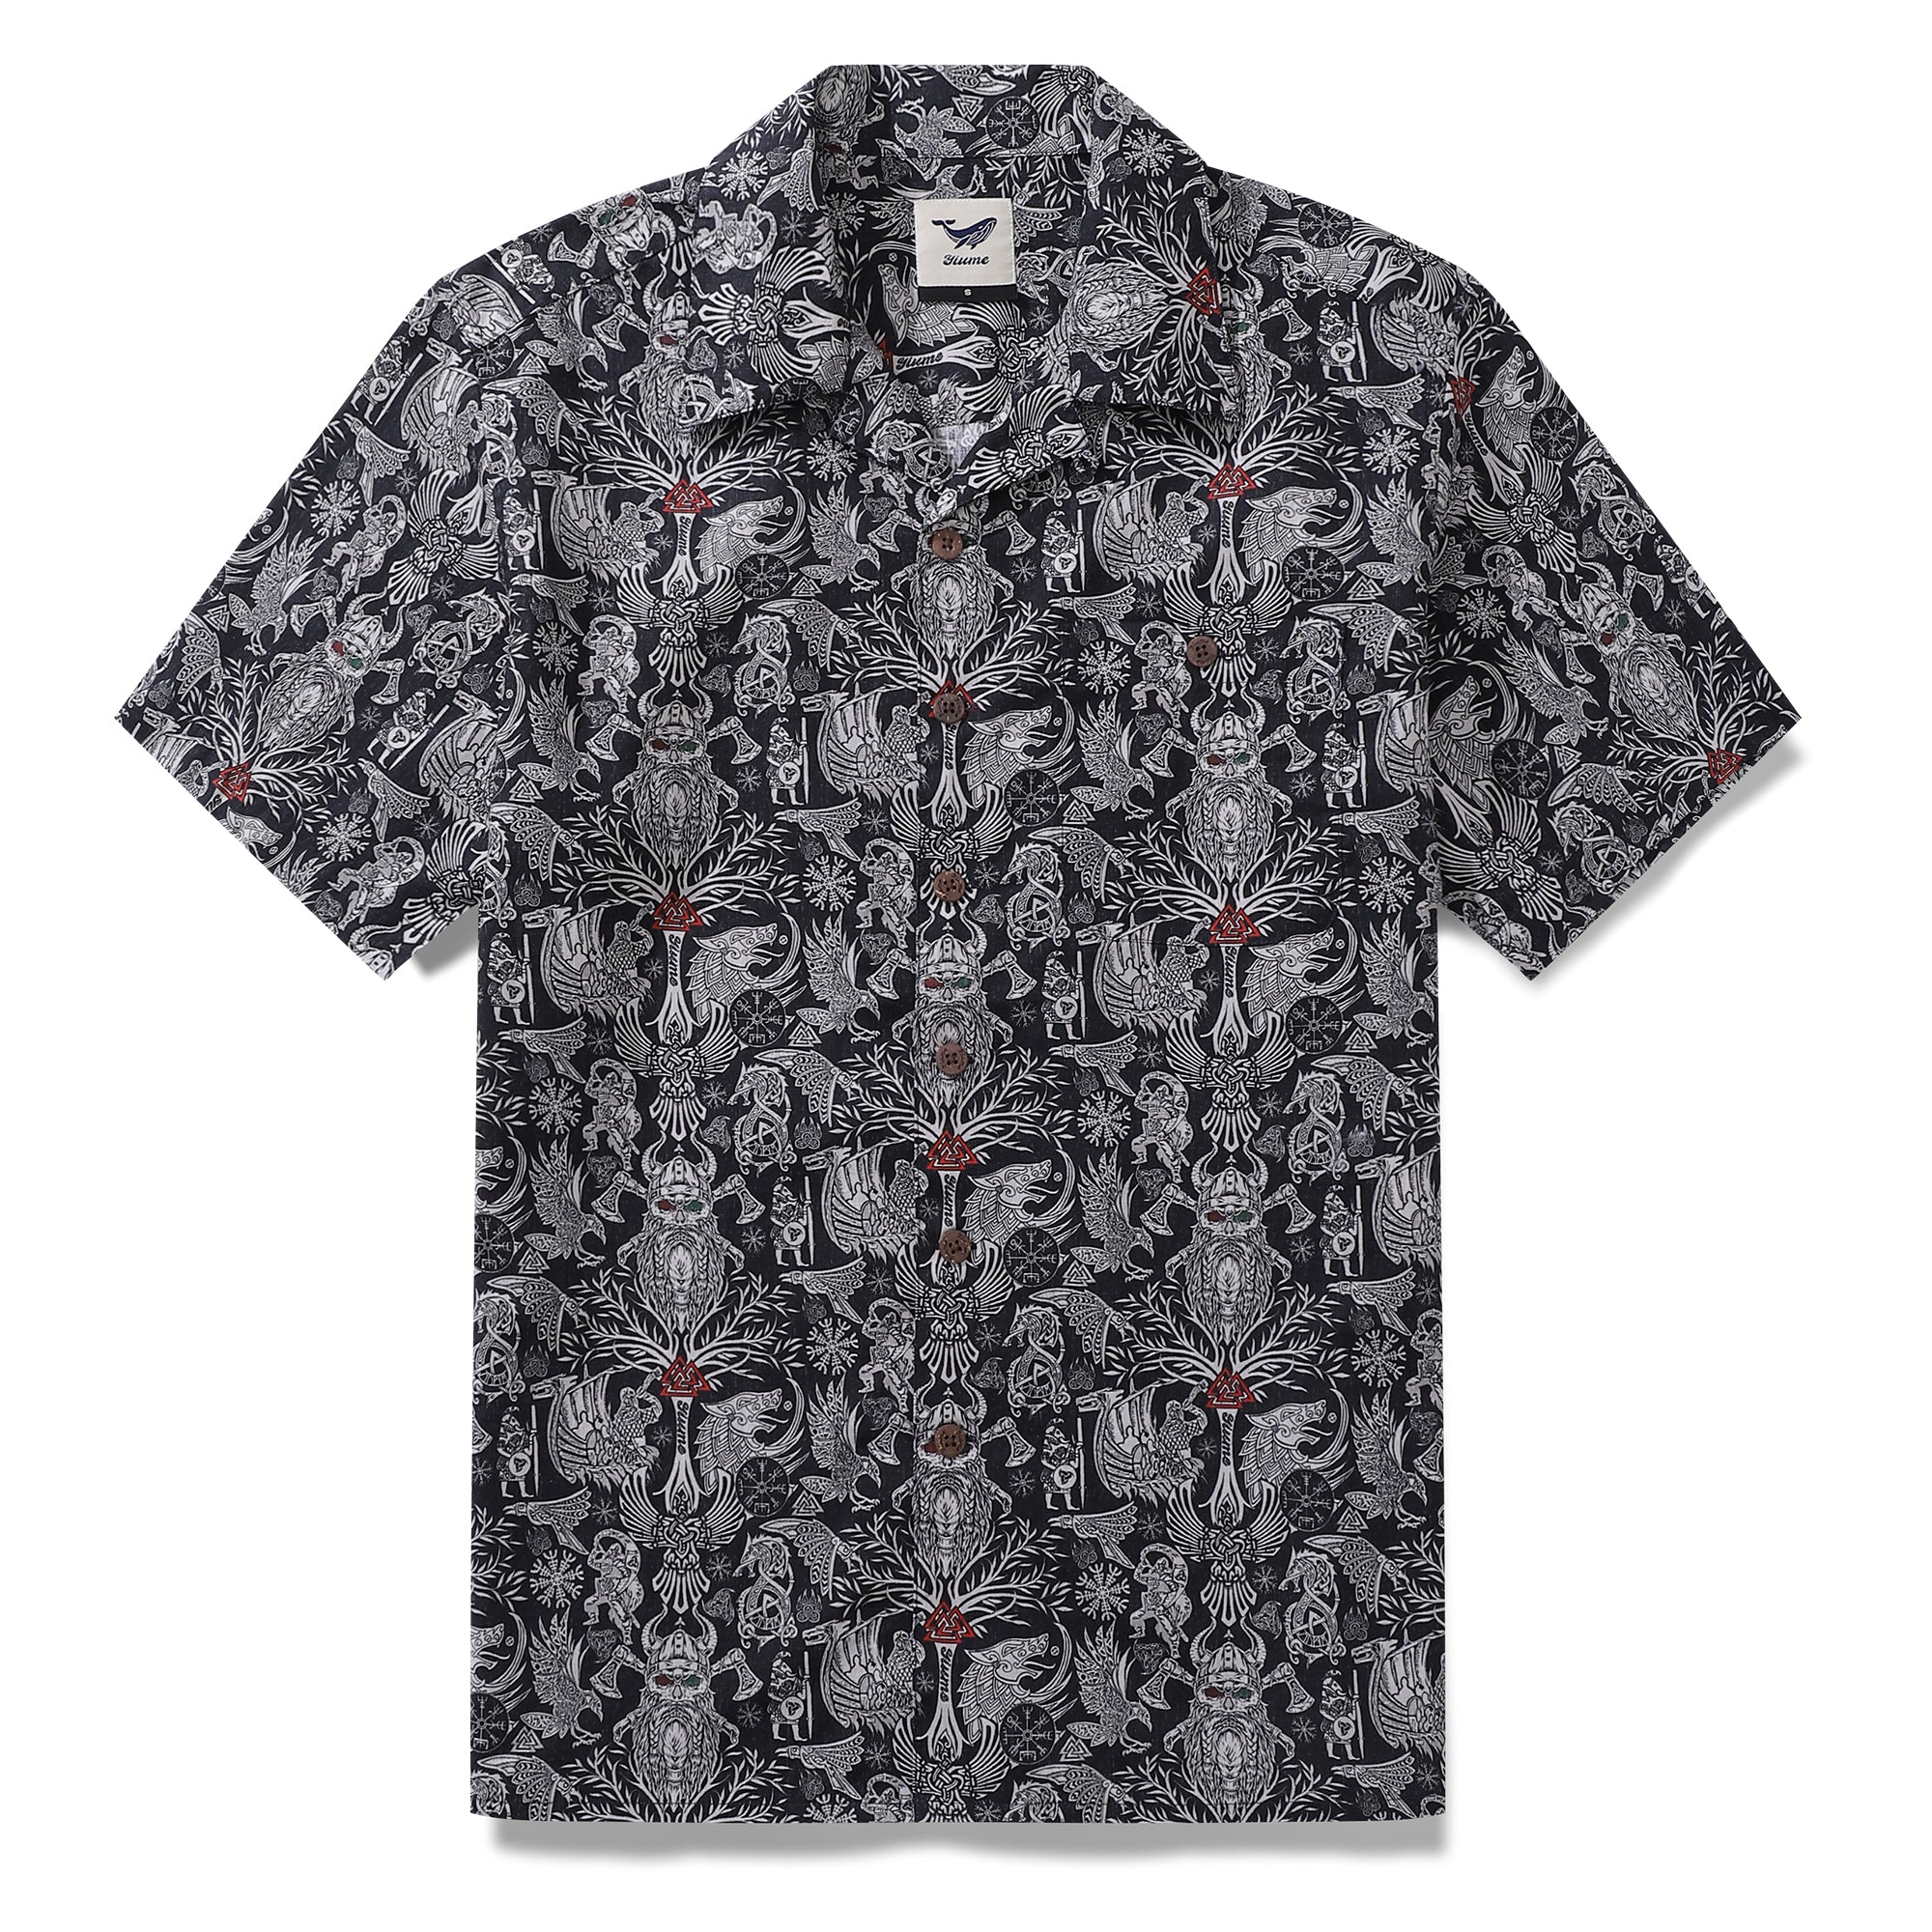 Summer Hawaiian Shirt For Men Nordic Legends Print Shirt Camp Collar 100% Cotton